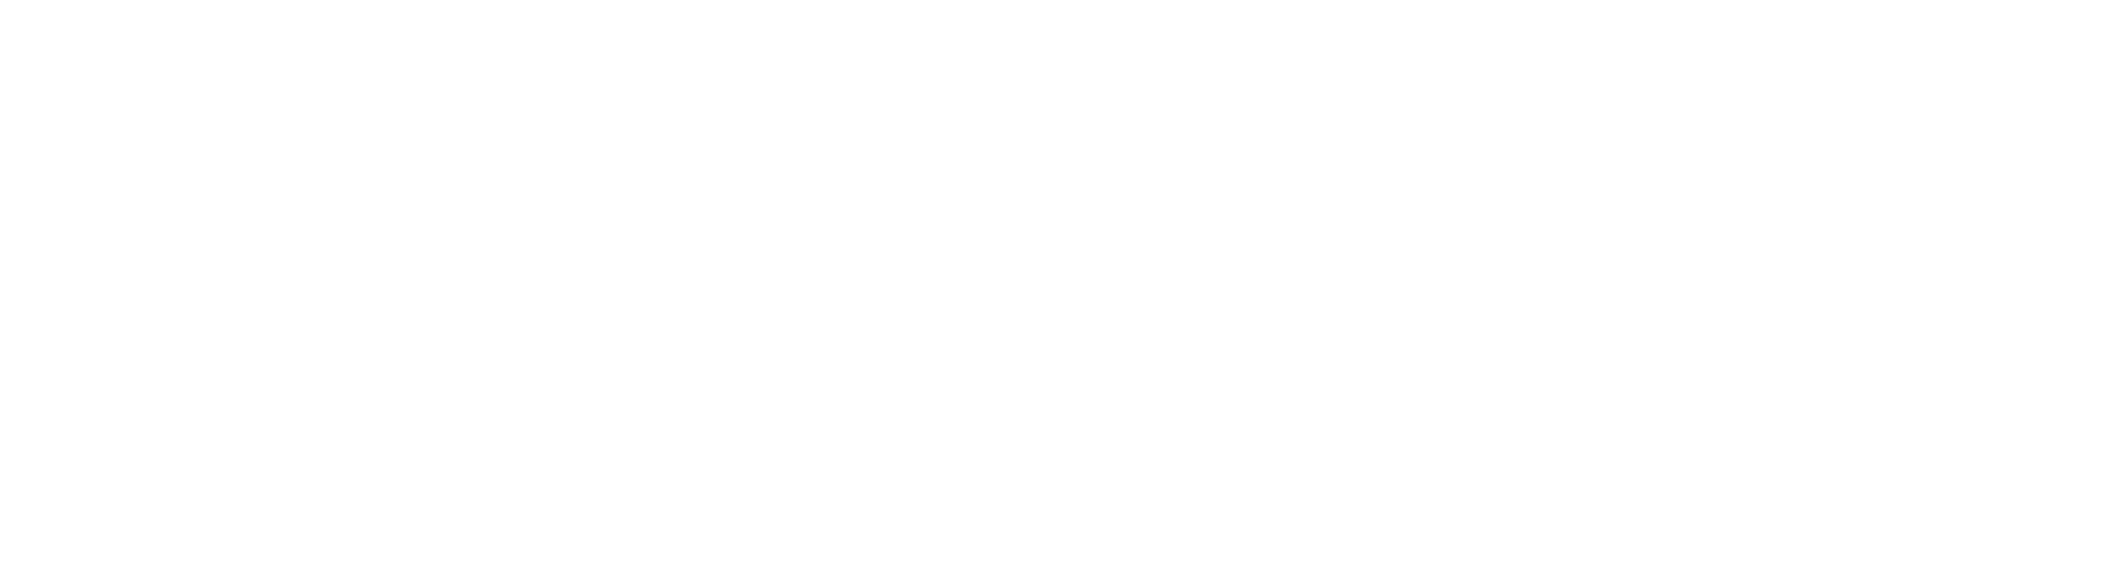 DOC2DOC LENDING logo